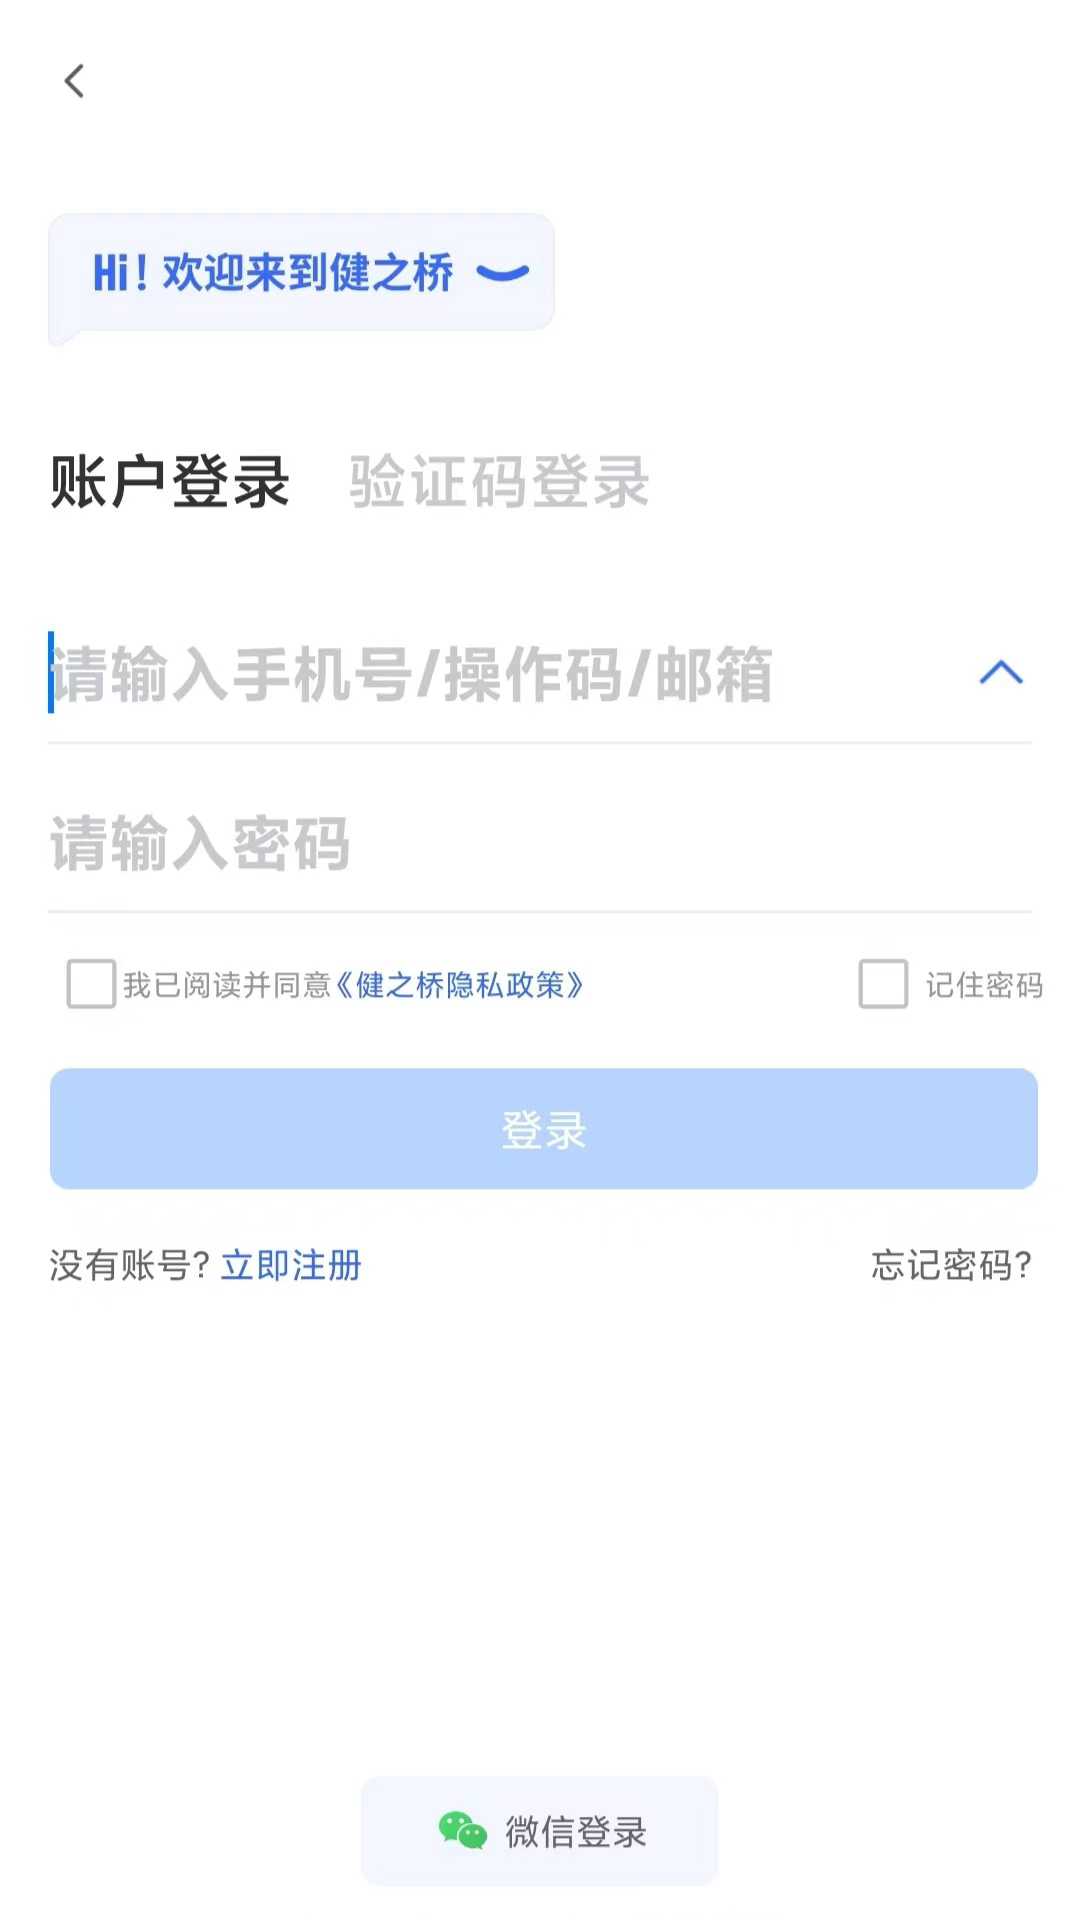 健之桥医药网app下载,健之桥医药网app官方下载 v1.2.5